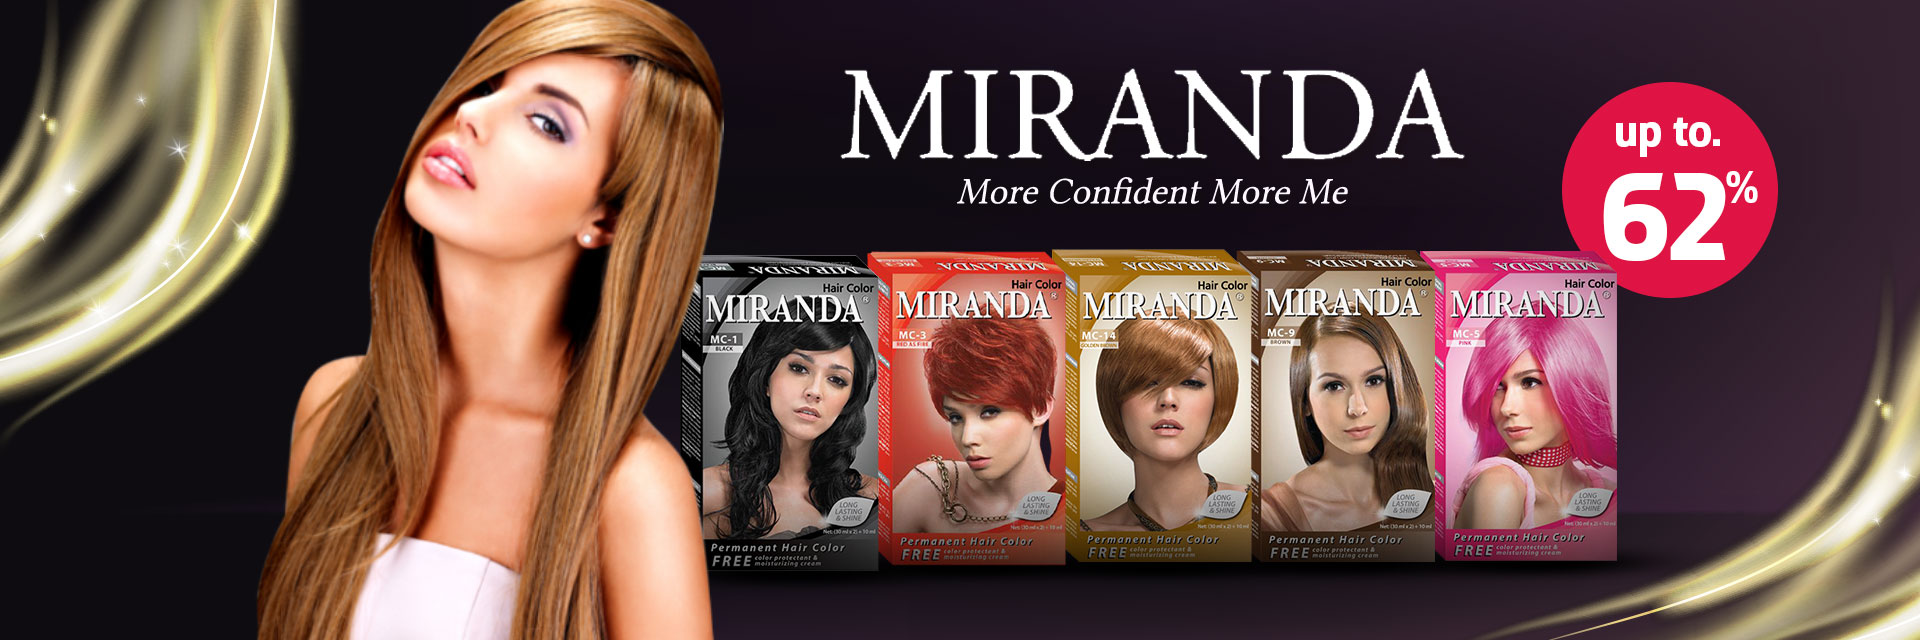 Miranda More Confident More Me